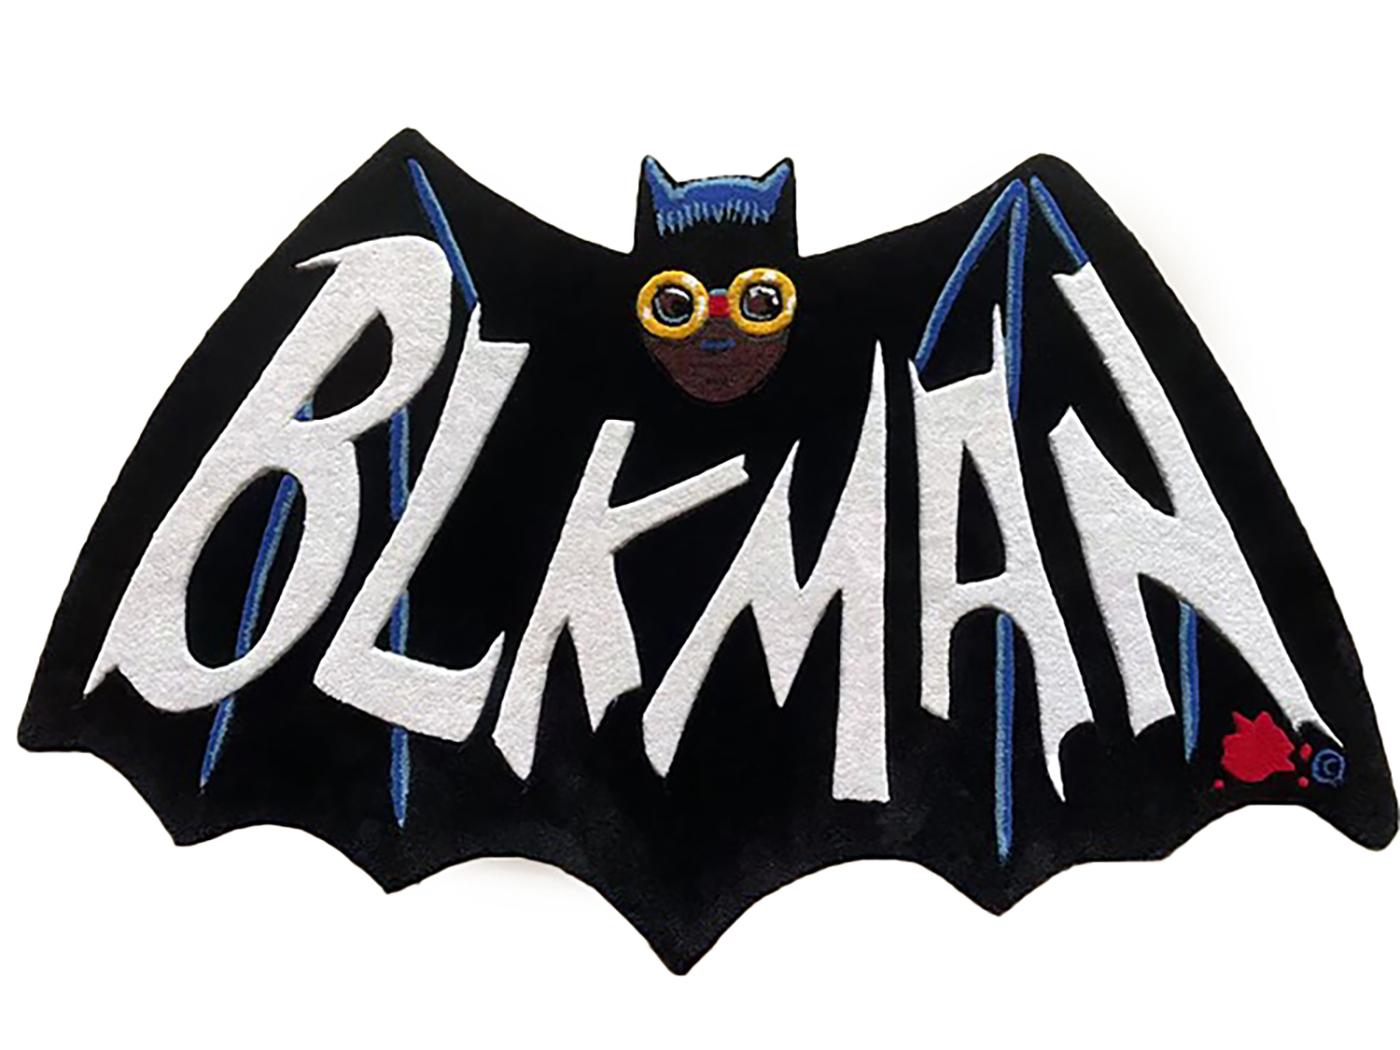 Hebru Brantley Calling All Cars rug (Hebru Brantley Blk Man) :
La brillante interprétation de Batman par Brilliante est magnifiquement exécutée sous la forme d'un tapis d'art de grande taille et esthétique, qui ne manquera pas de se faire remarquer